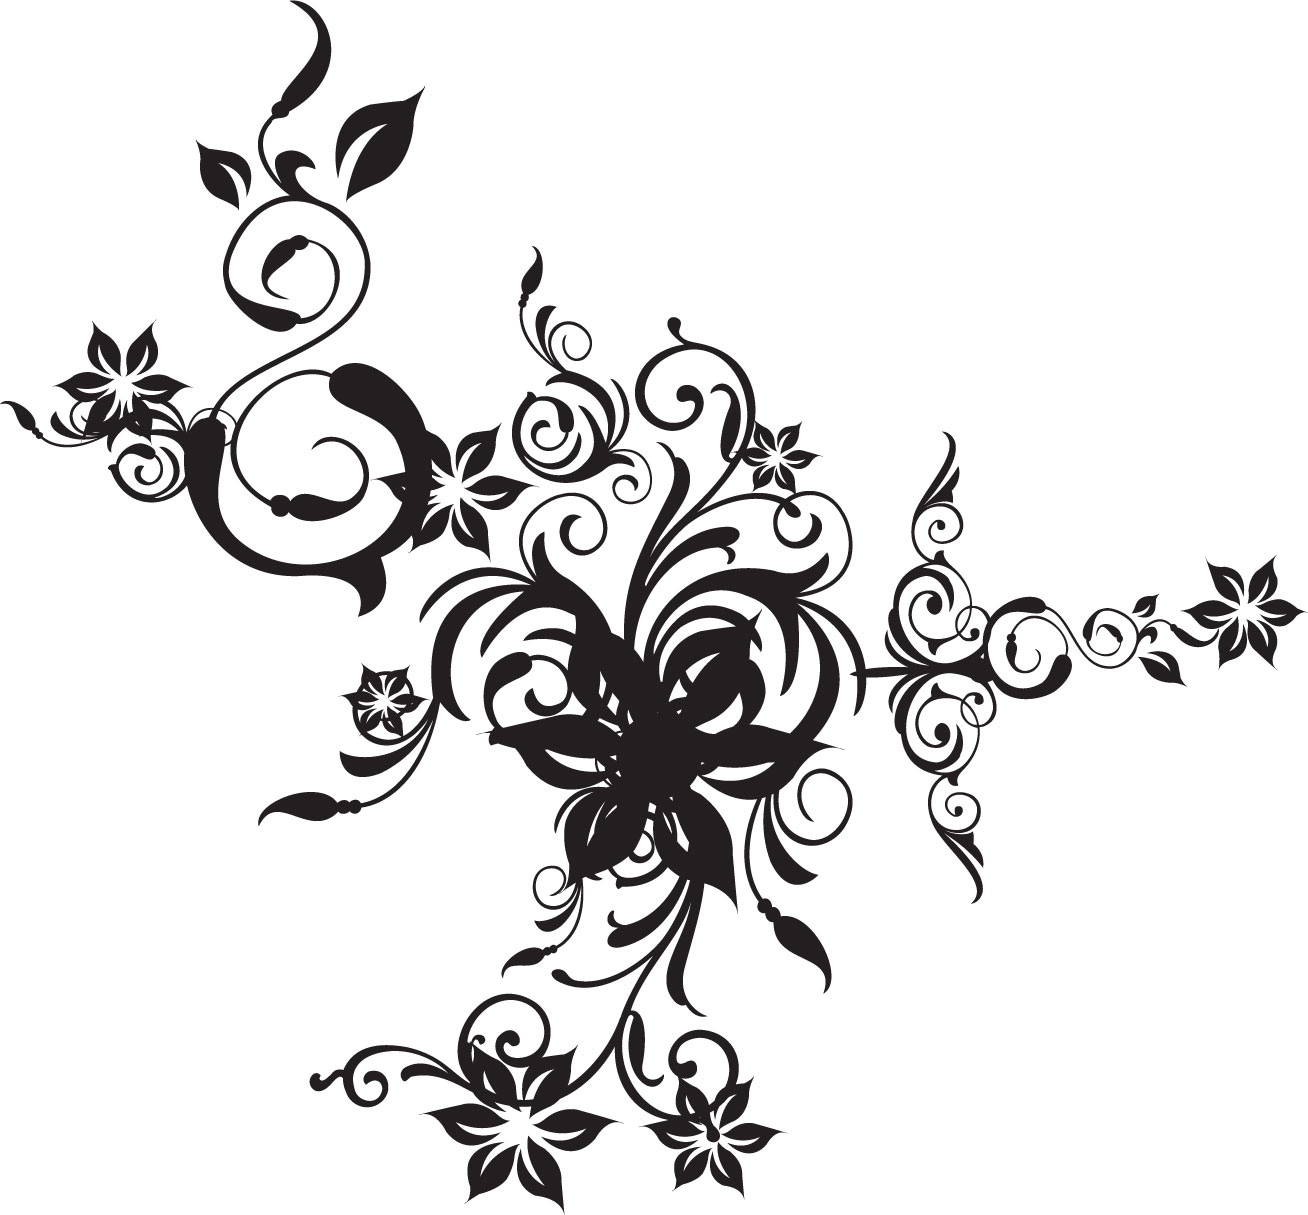 花のイラスト フリー素材 白黒 モノクロno 477 白黒 茎葉 ボディージュエリーアート デザインまとめ Naver まとめ